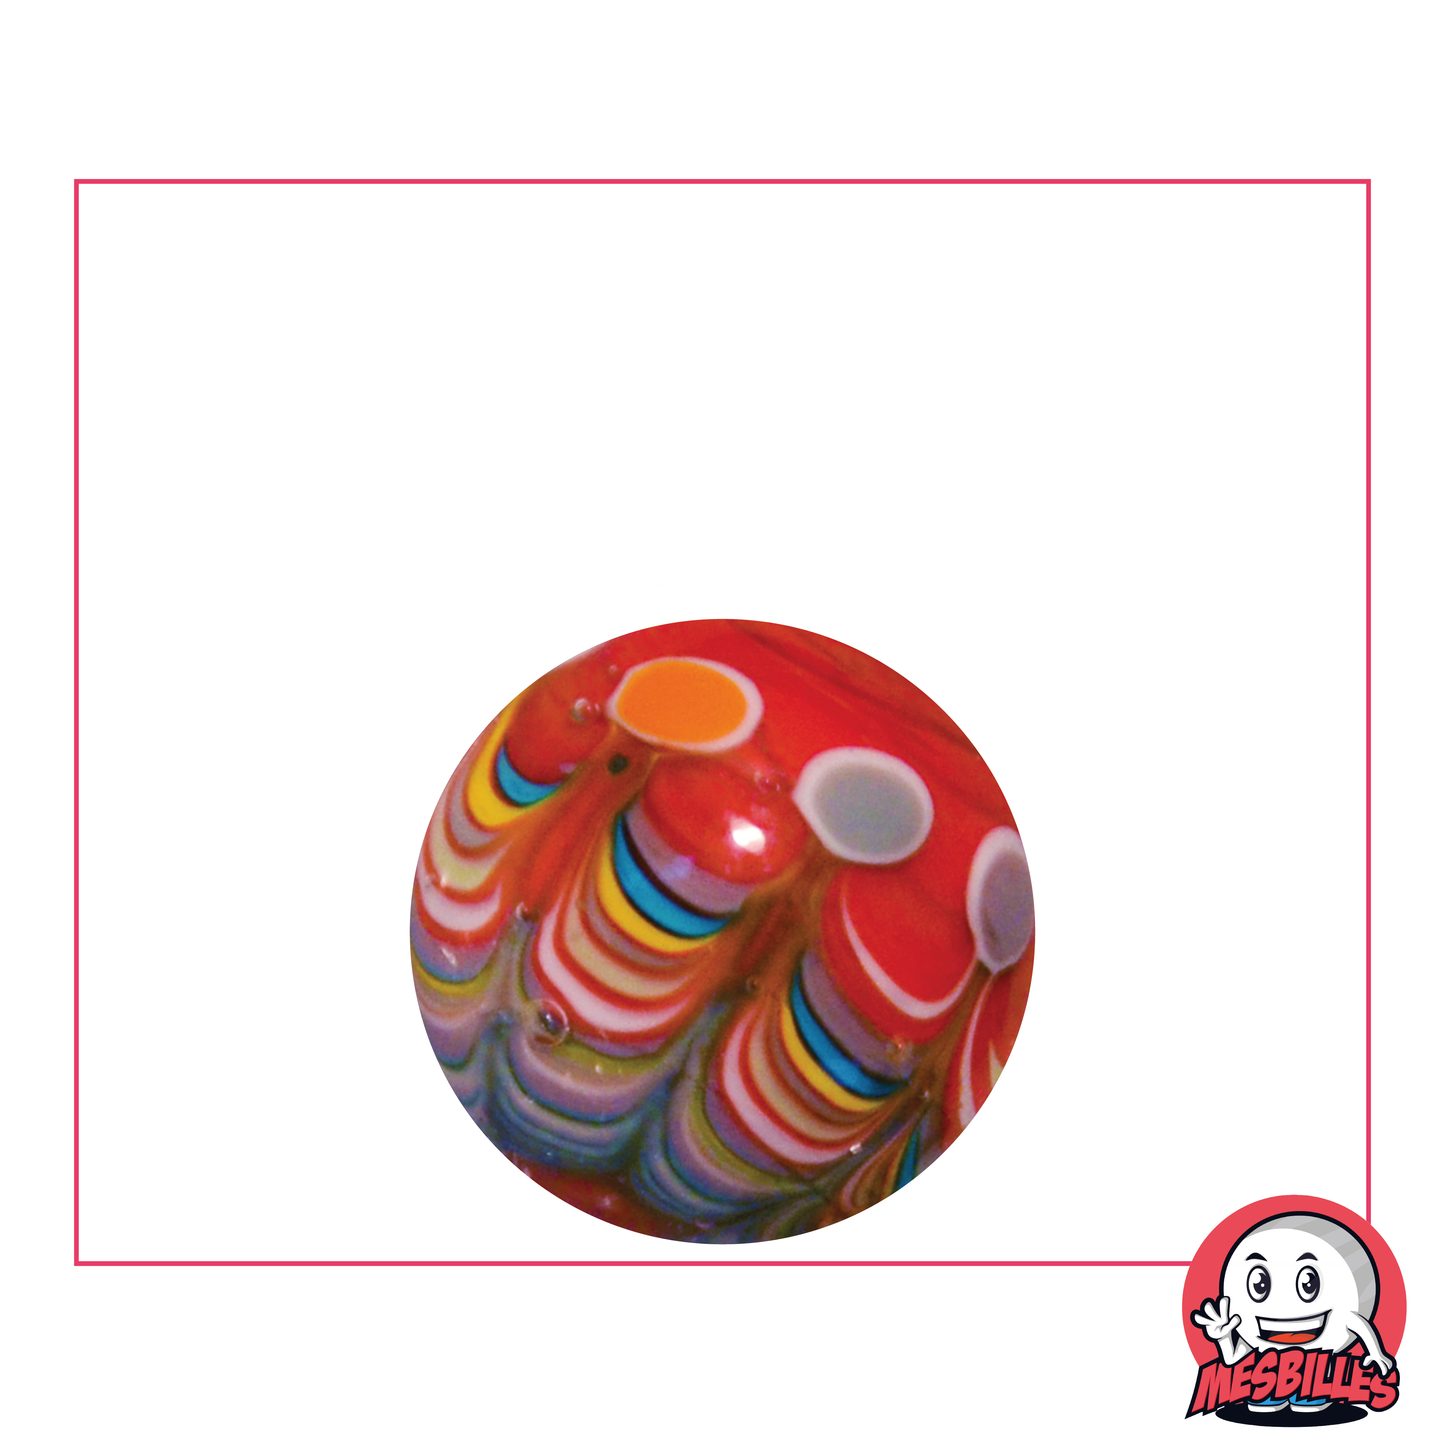 Bille Art Joker Rouge 22 mm, bille personnalisée réalisée à la main avec de multiples ronds colorés.